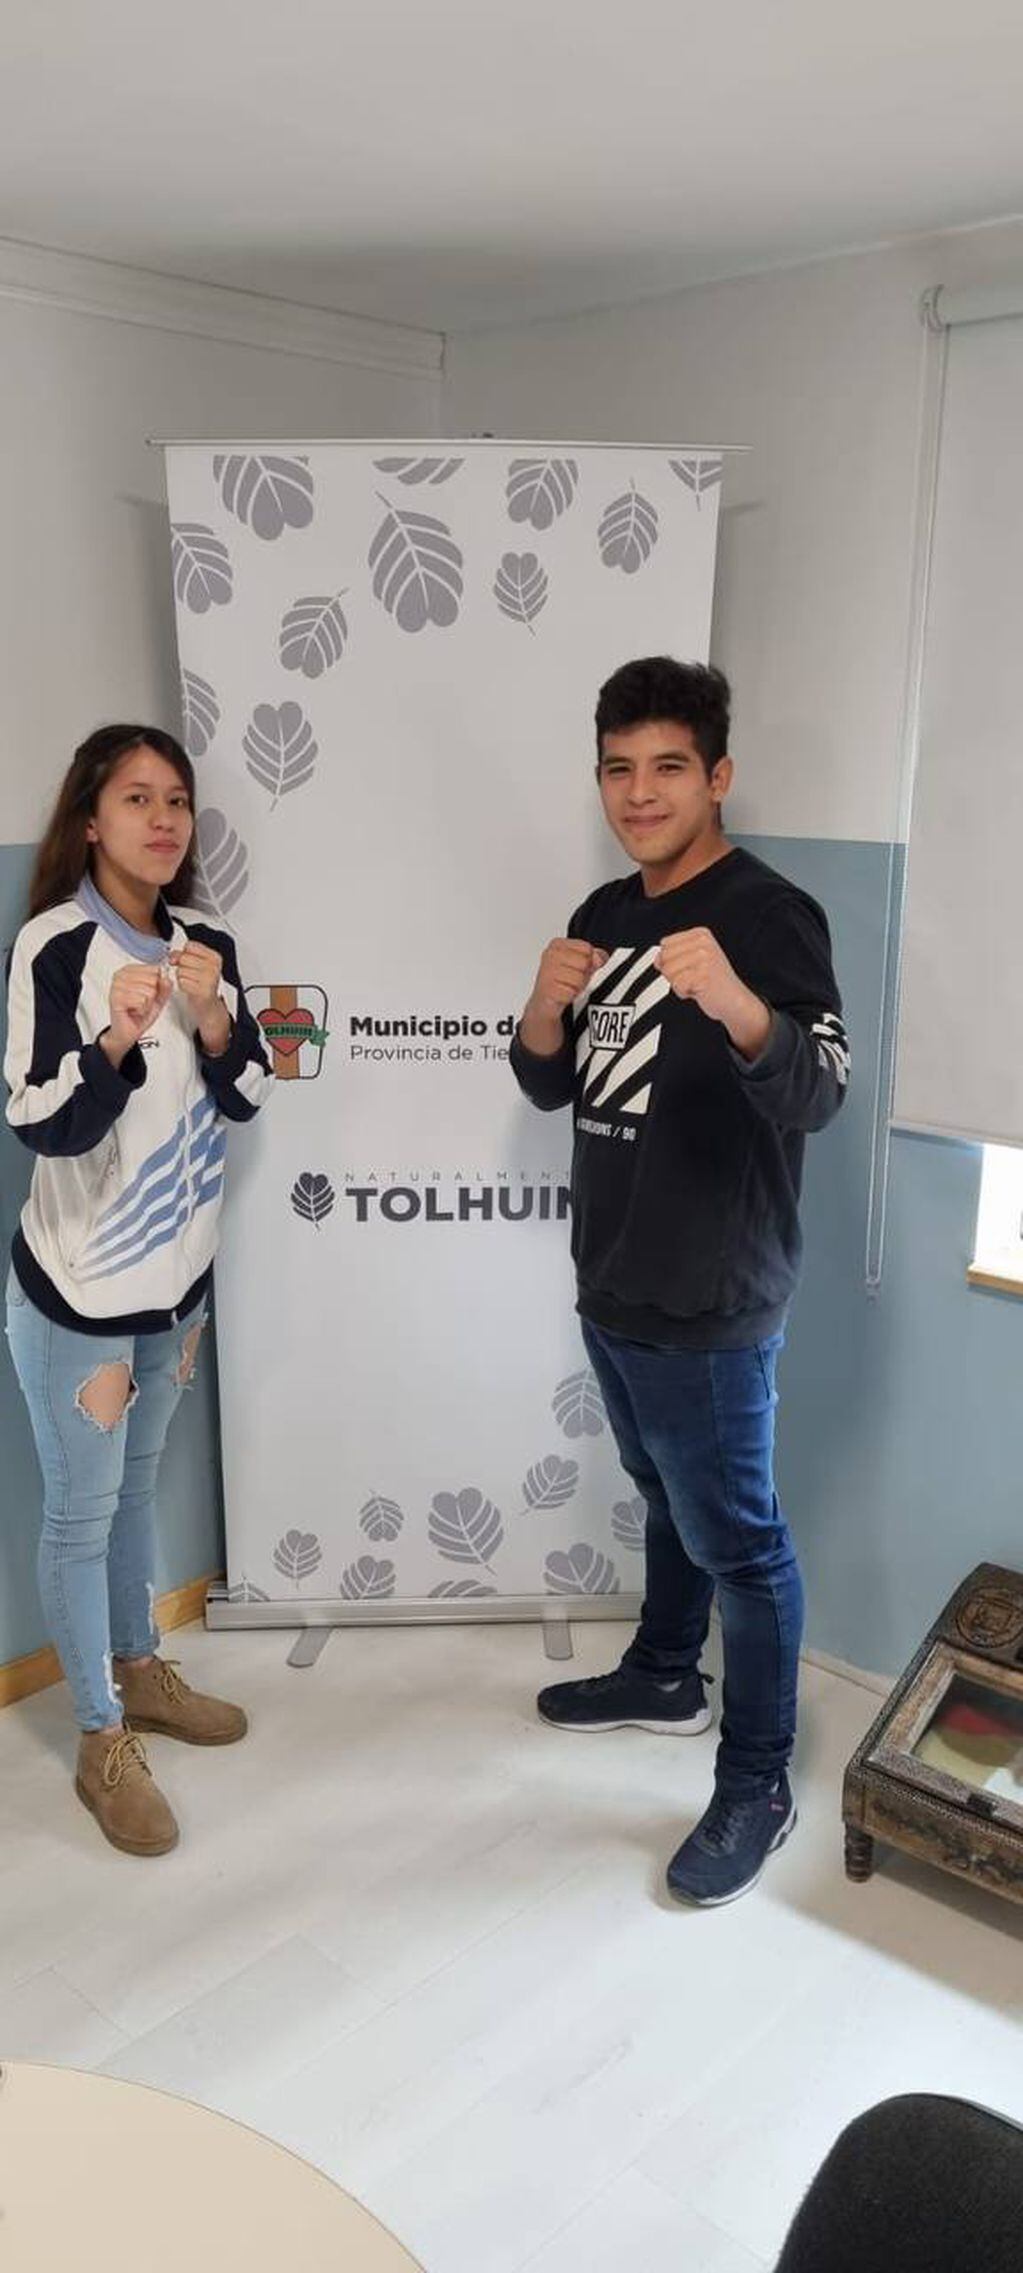 Ambos jóvenes representarán a Tolhuin en el torneo que se disputará en Posadas, Misiones.